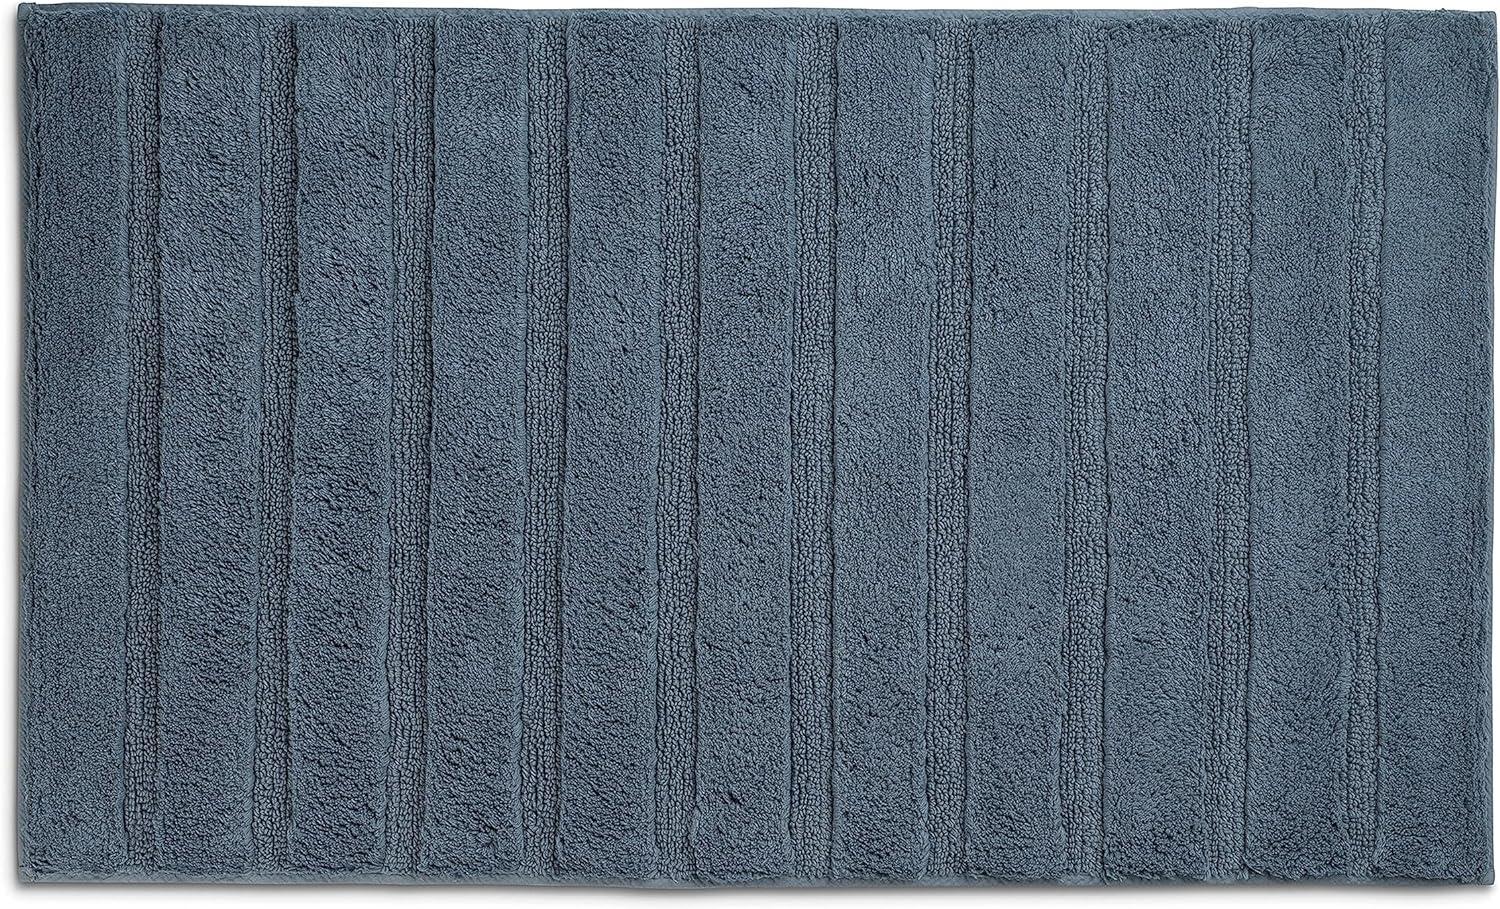 Kela Badematte Megan, 80 cm x 50 cm, 100% Baumwolle, Rauchblau, rutschhemmend, waschbar bis 30° C, geeignet für Fußbodenheizung, 24701 Bild 1